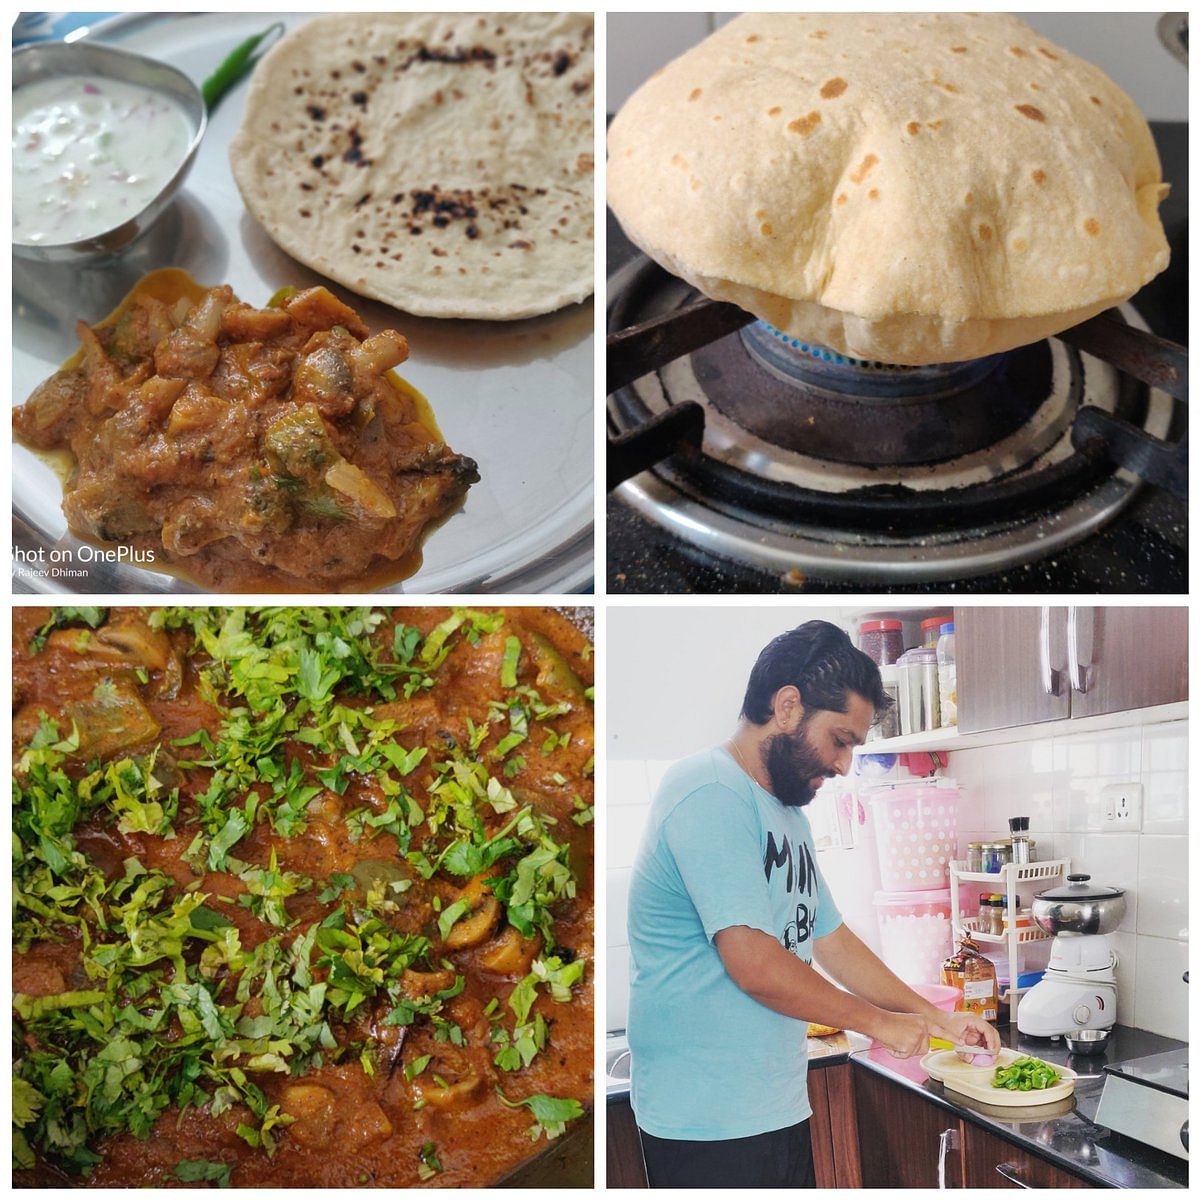 social media challenge let men cook trend on internet men cook delicious food during lock down